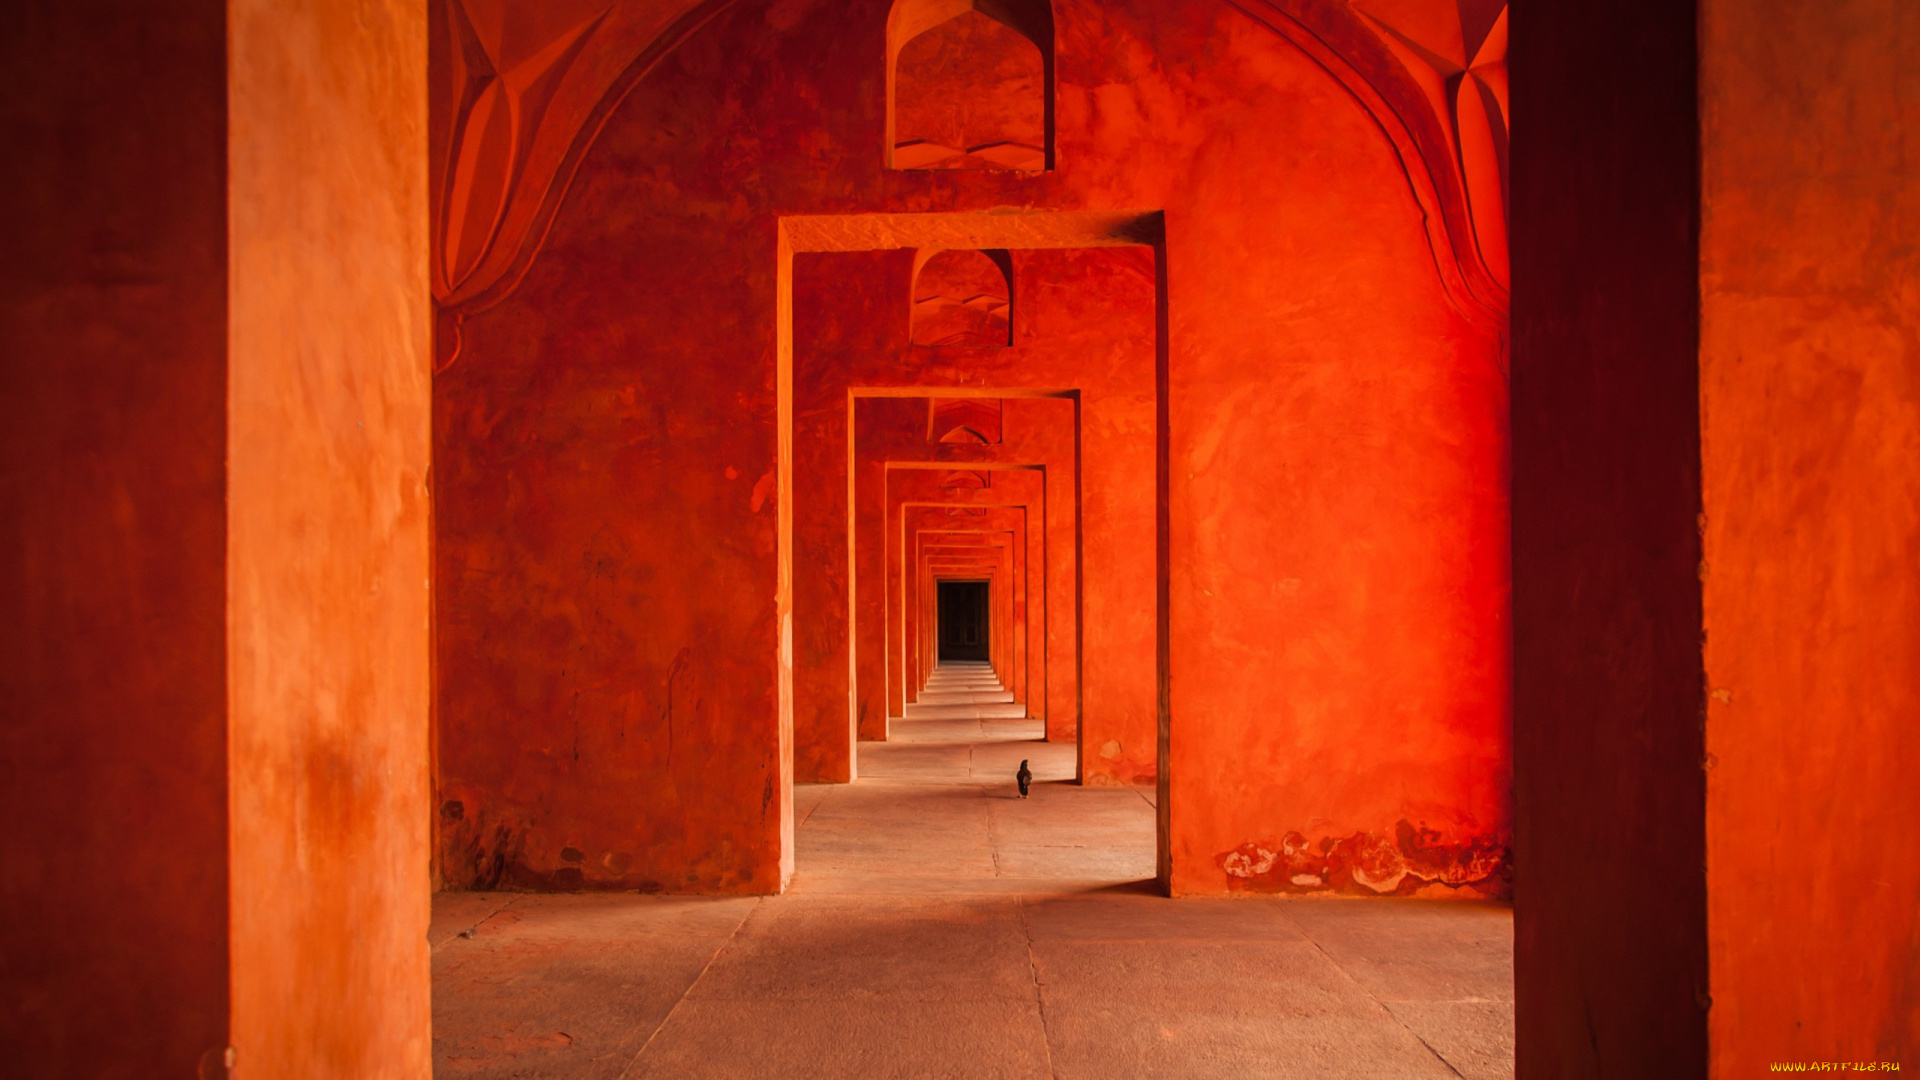 разное, элементы, архитектуры, столб, здание, красный, оранжевый, дверные, проемы, архитектура, пакистан